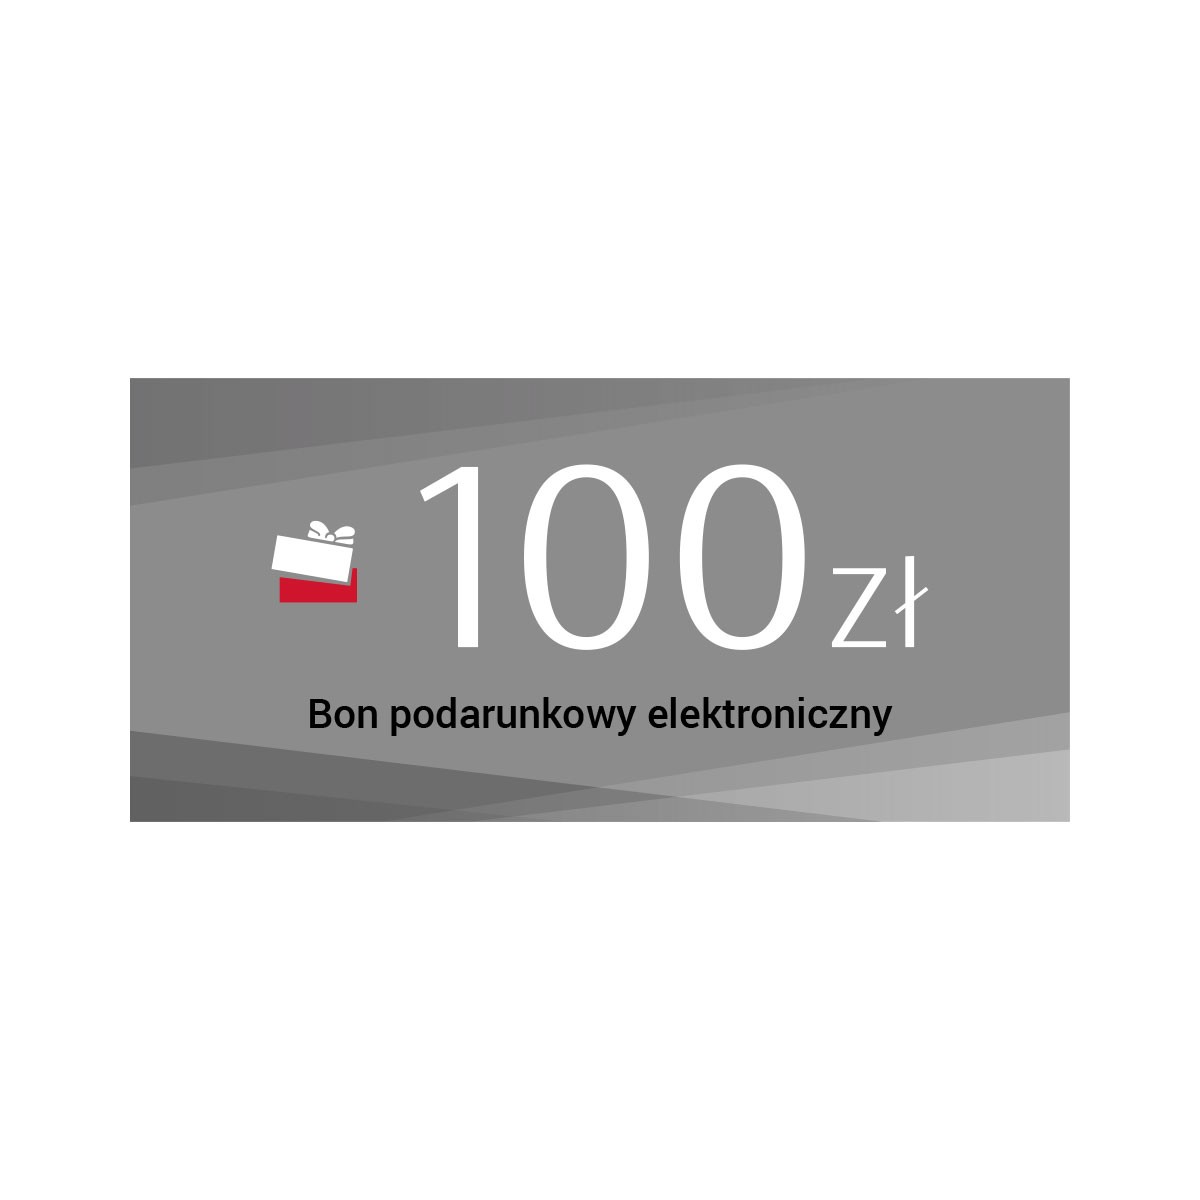 Elektroniczny bon podarunkowy - 100 zł